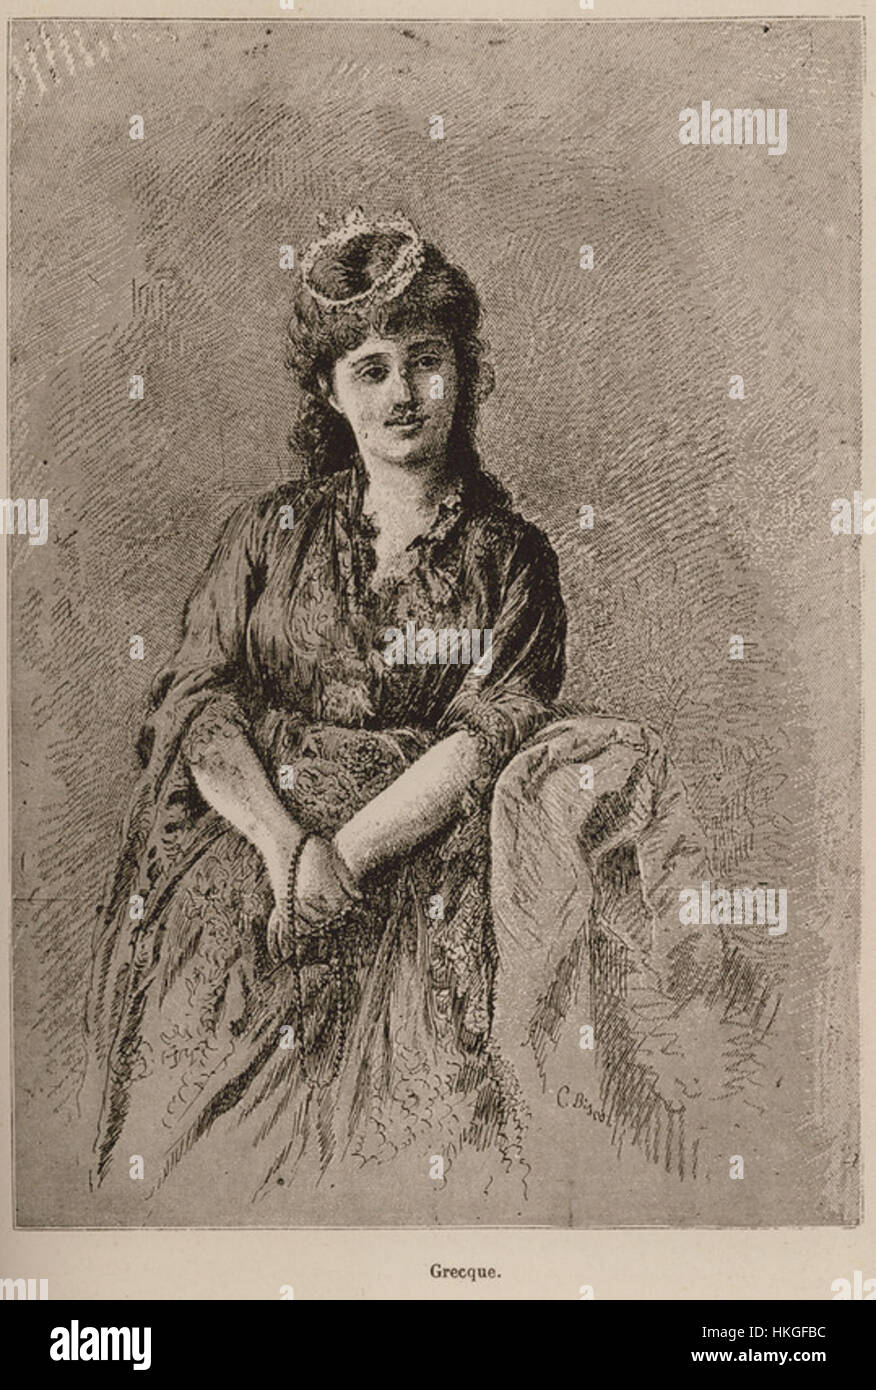 Grecque   De Amicis Edmondo   1883 Stock Photo